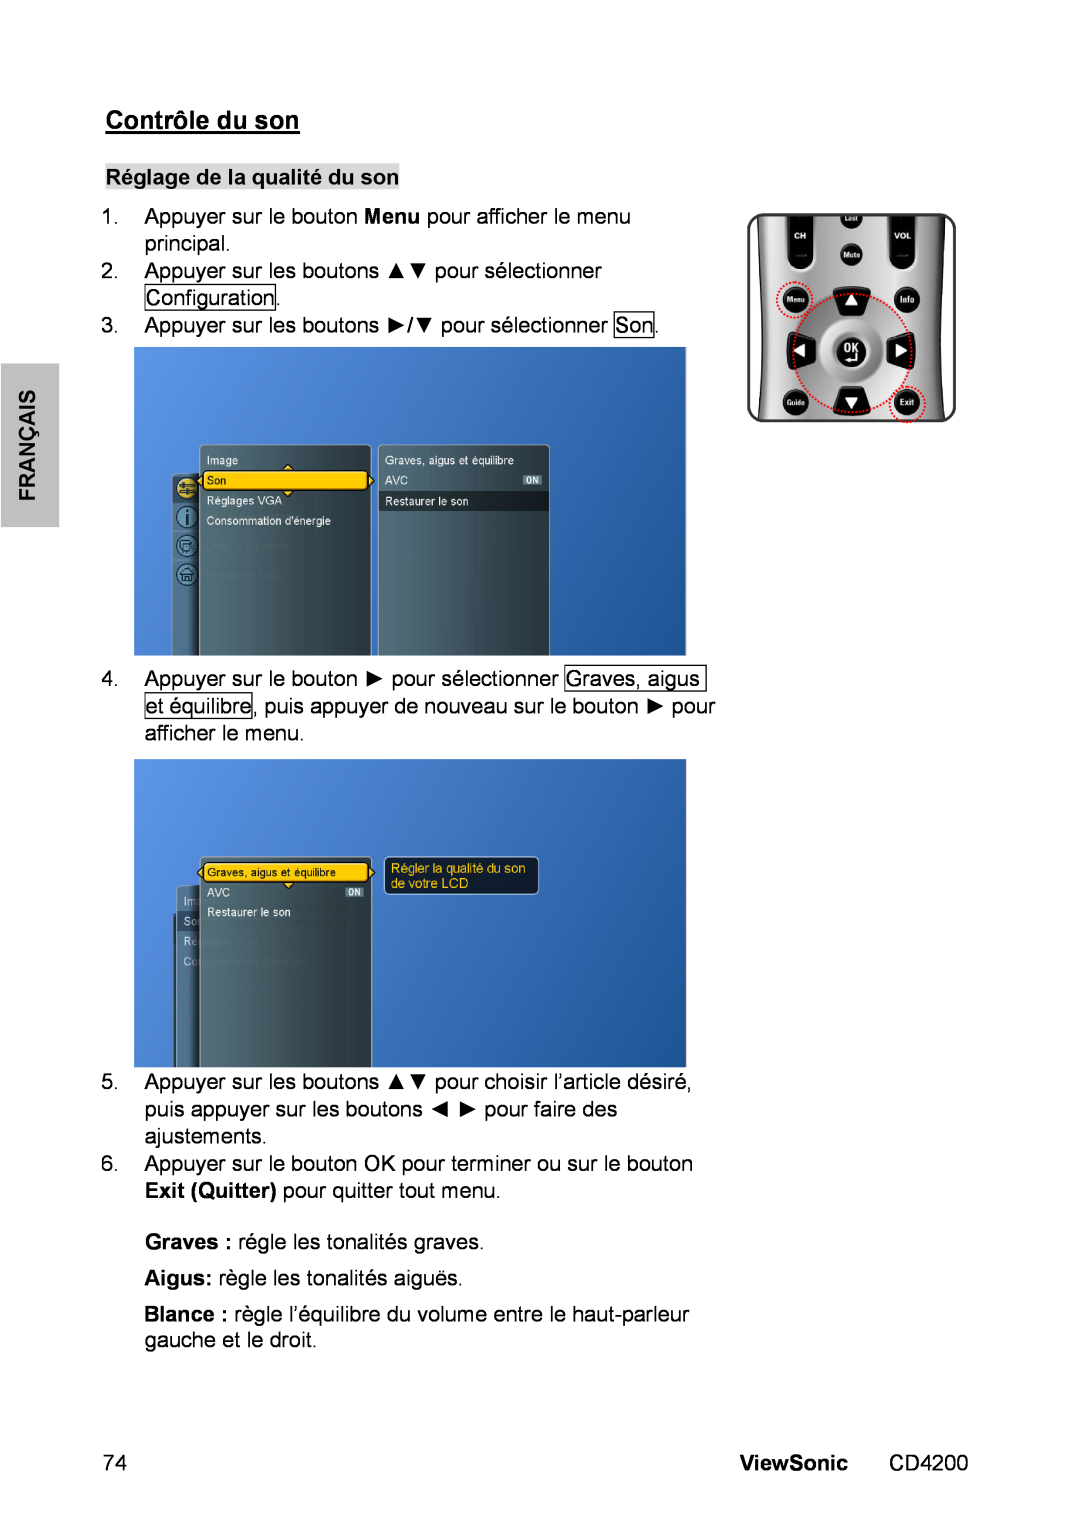 ViewSonic CD4200 manual Contrôle du son, Réglage de la qualité du son, Français, ViewSonic 